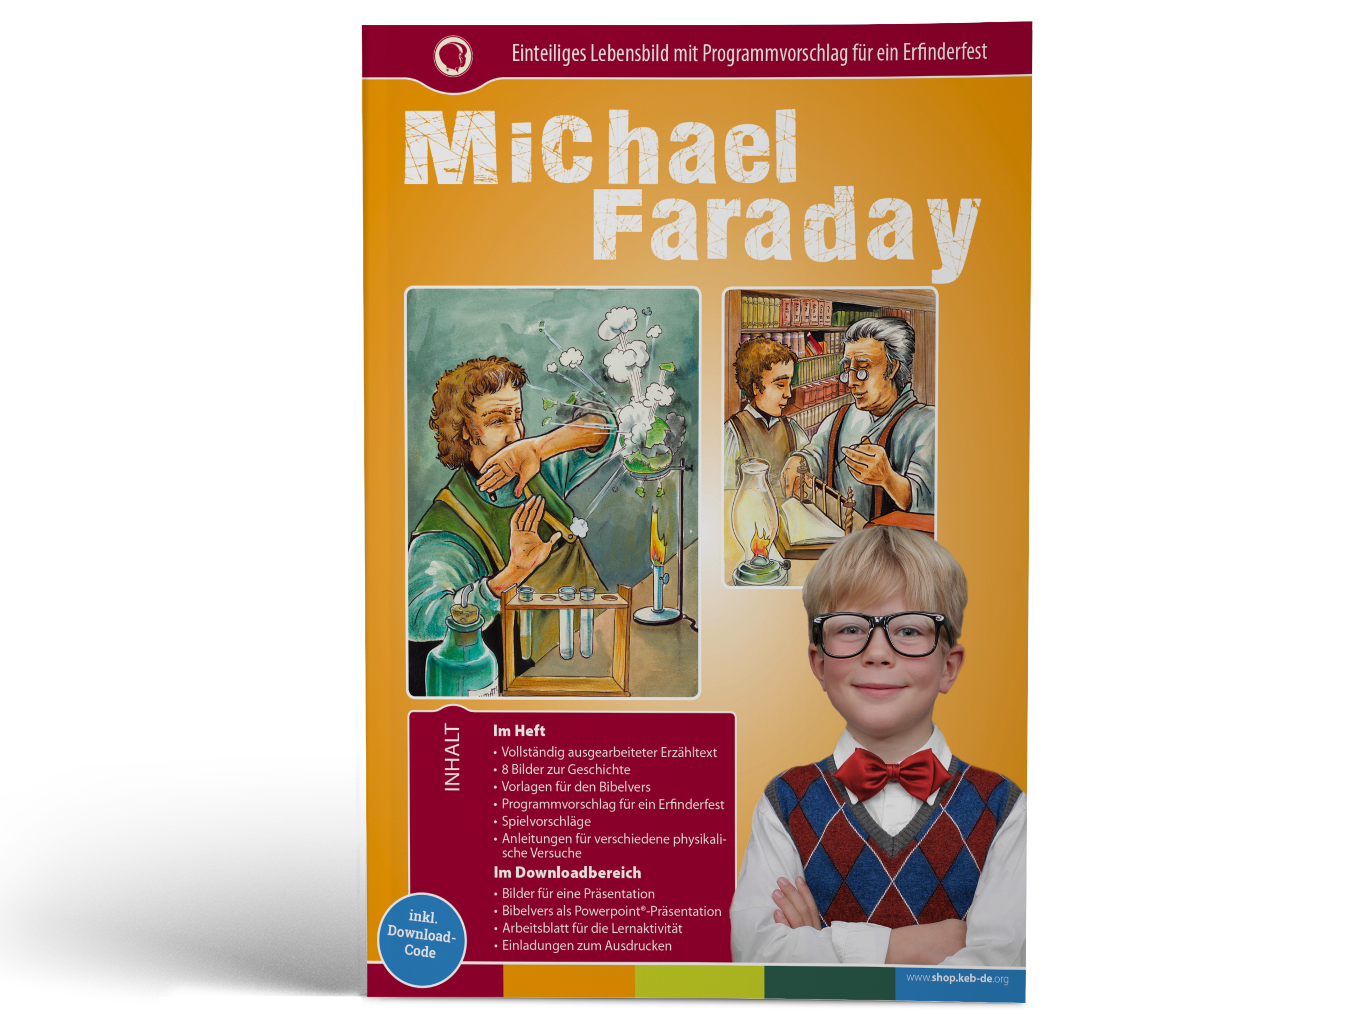 Michael Faraday - Einteiliges Lebensbild mit Programmvorschlag für ein Erfinderfest